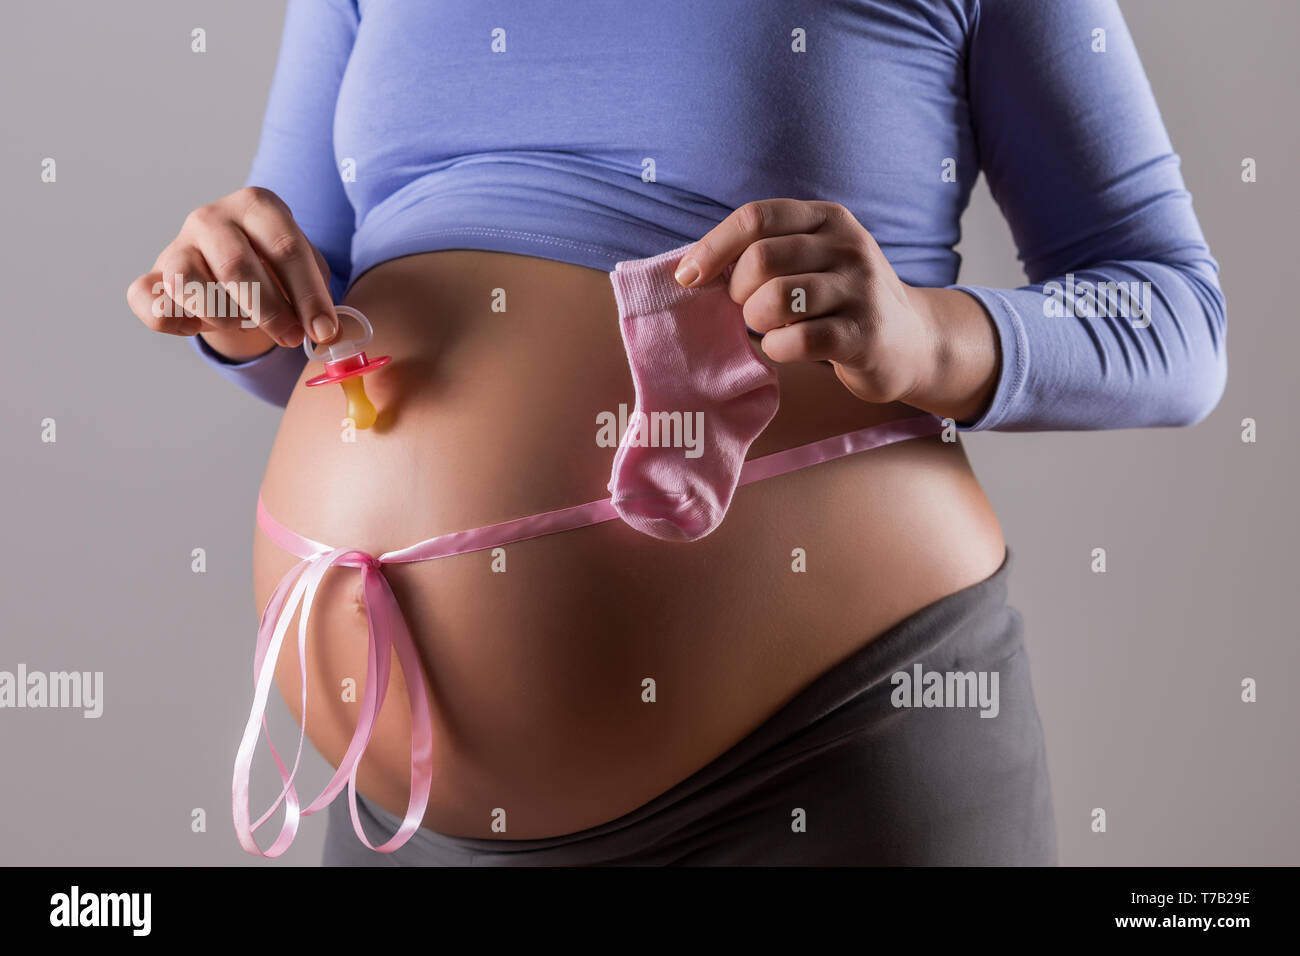 Immagine del ventre della donna incinta con il nastro rosa azienda succhietto e calzini per bambina su sfondo grigio. Foto Stock